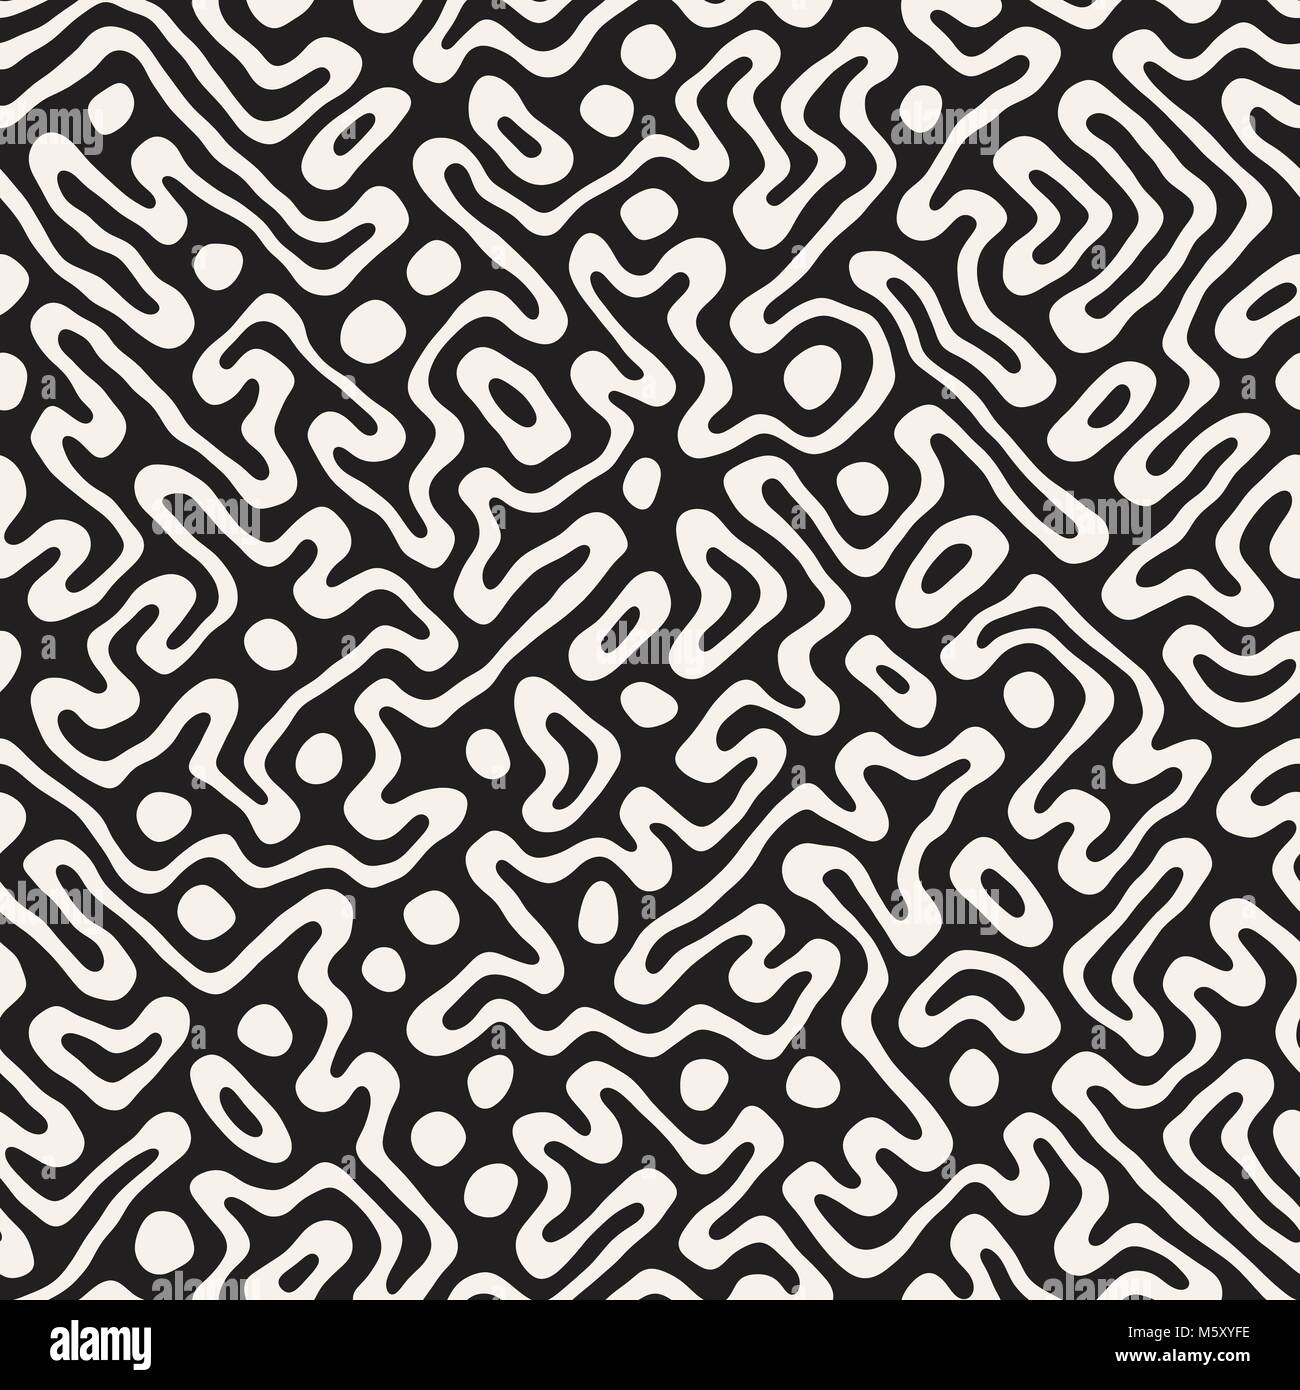 Nahtlose Muster mit Labyrinth Linien. Monochrome abstrakt Hintergrund. Vektor Hand gezeichneten Labyrinth. Stock Vektor